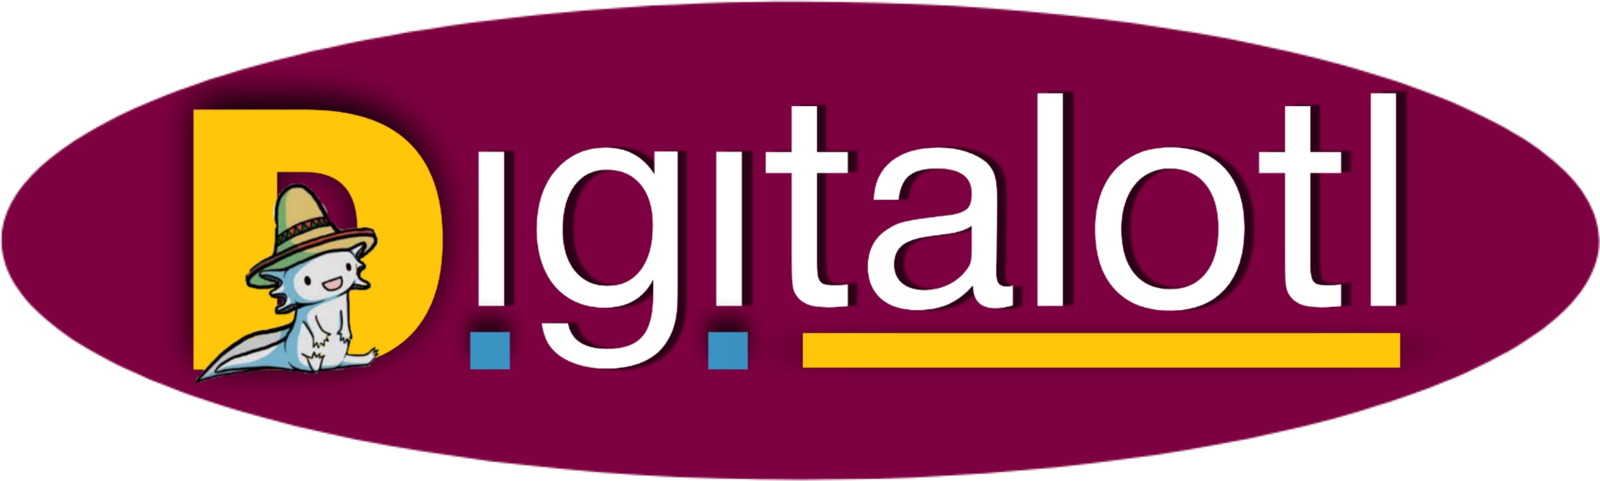 Digitalotl_Logo